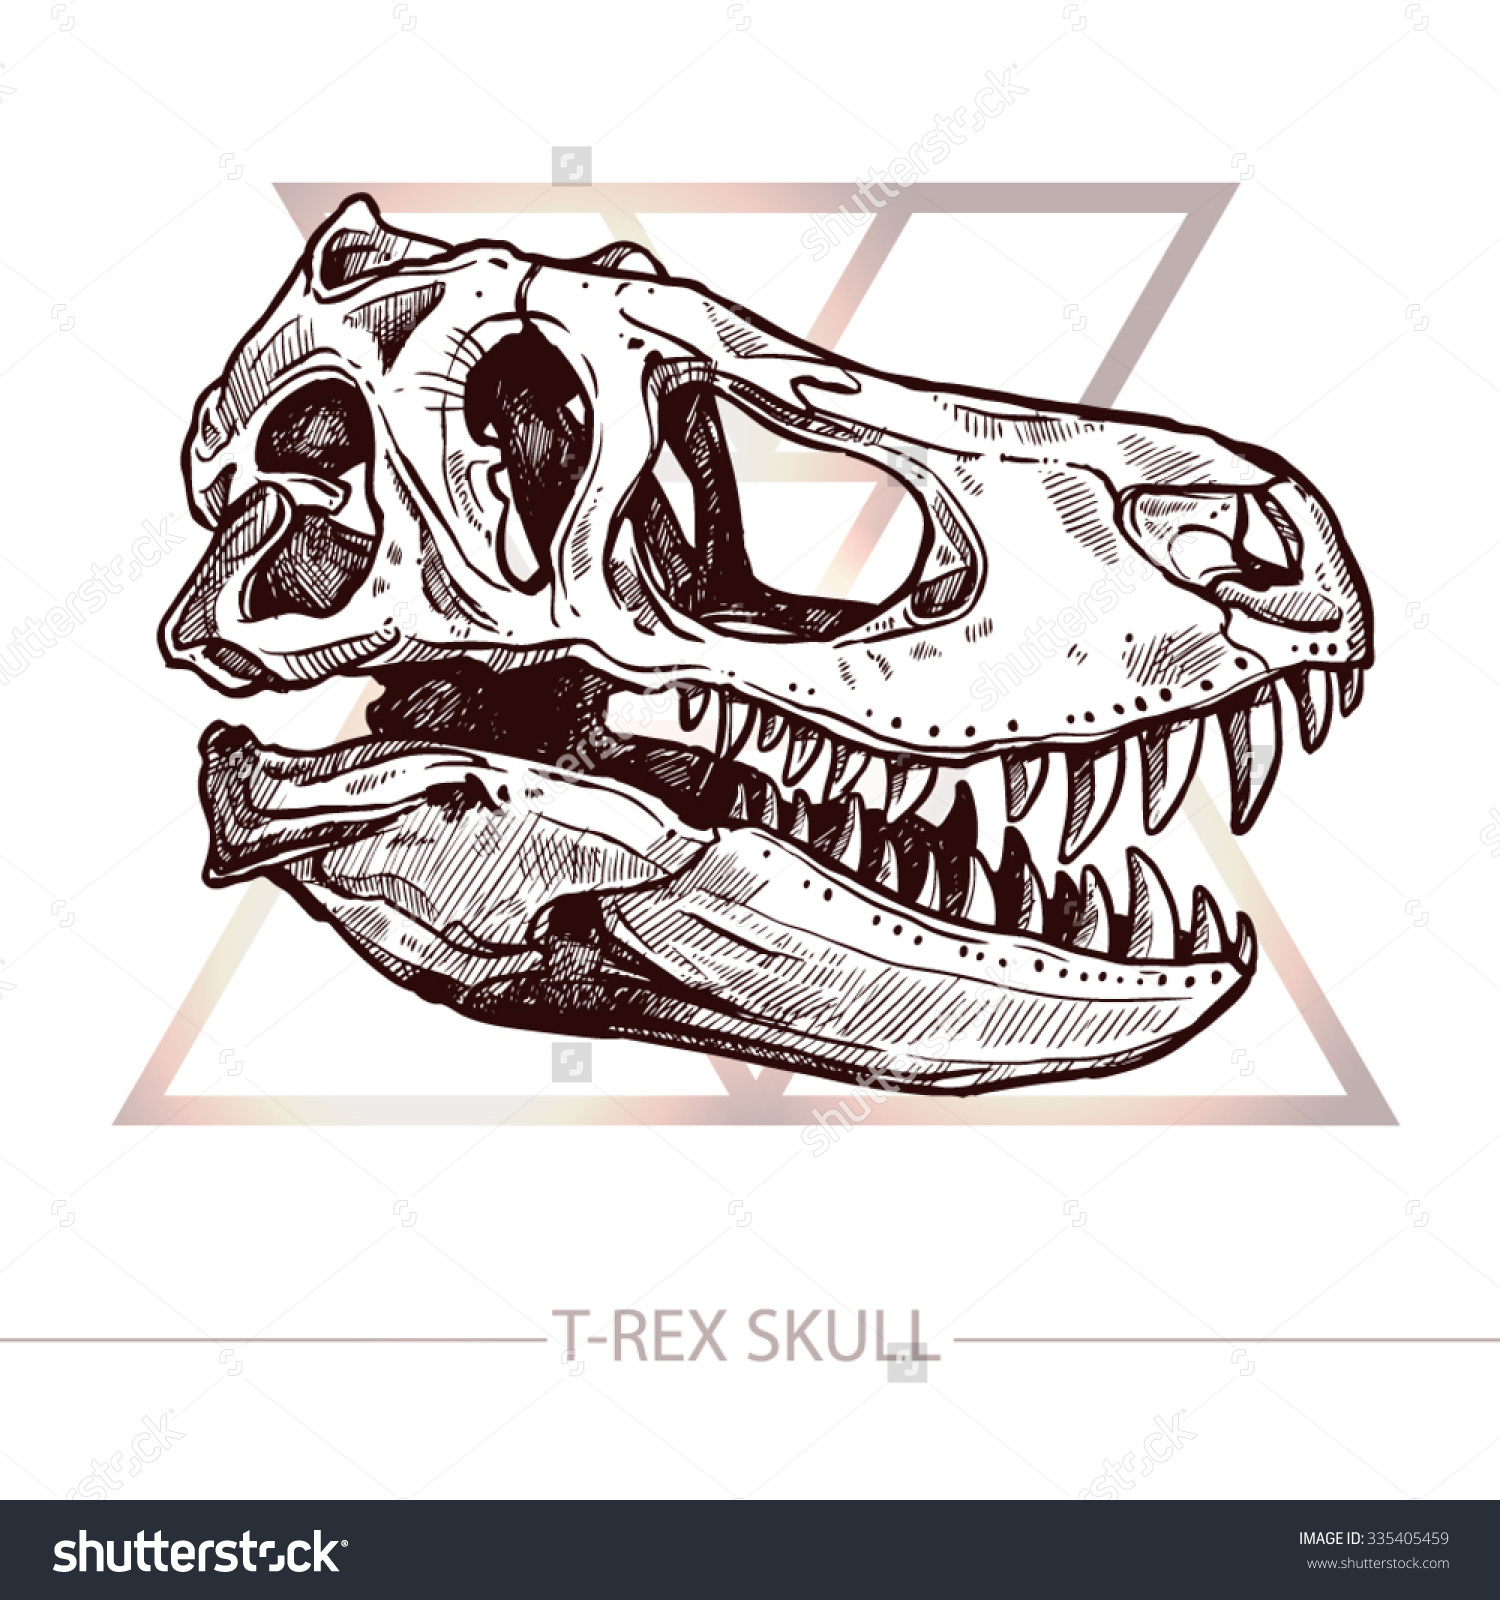 Skeleton Head Drawing at GetDrawings | Free download